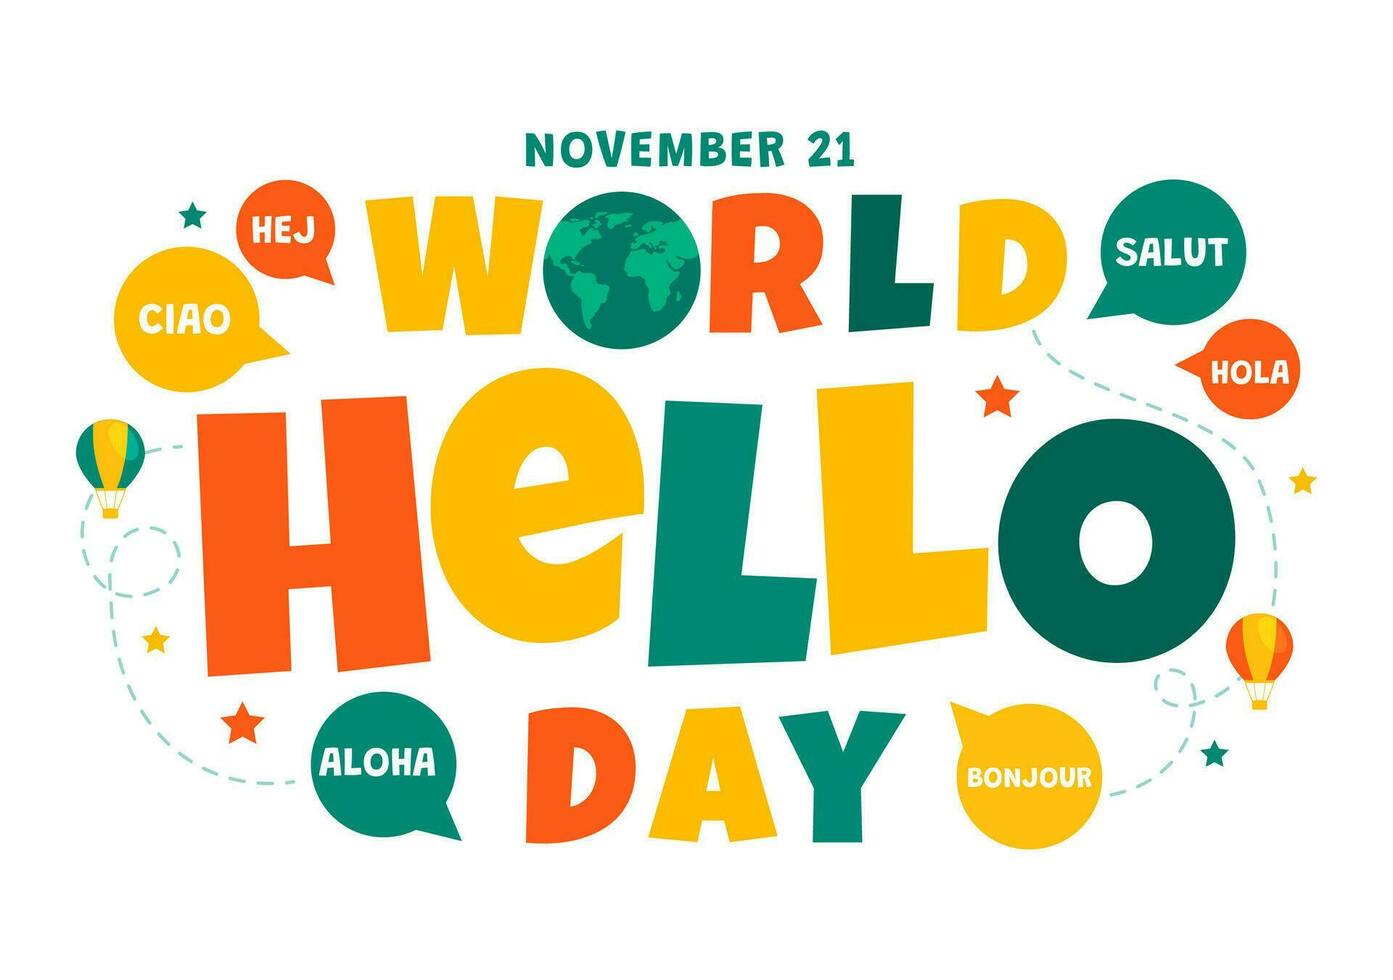 värld Hej dag vektor illustration på november 21 av Tal bubblor med annorlunda språk från Allt över de Land i platt tecknad serie bakgrund